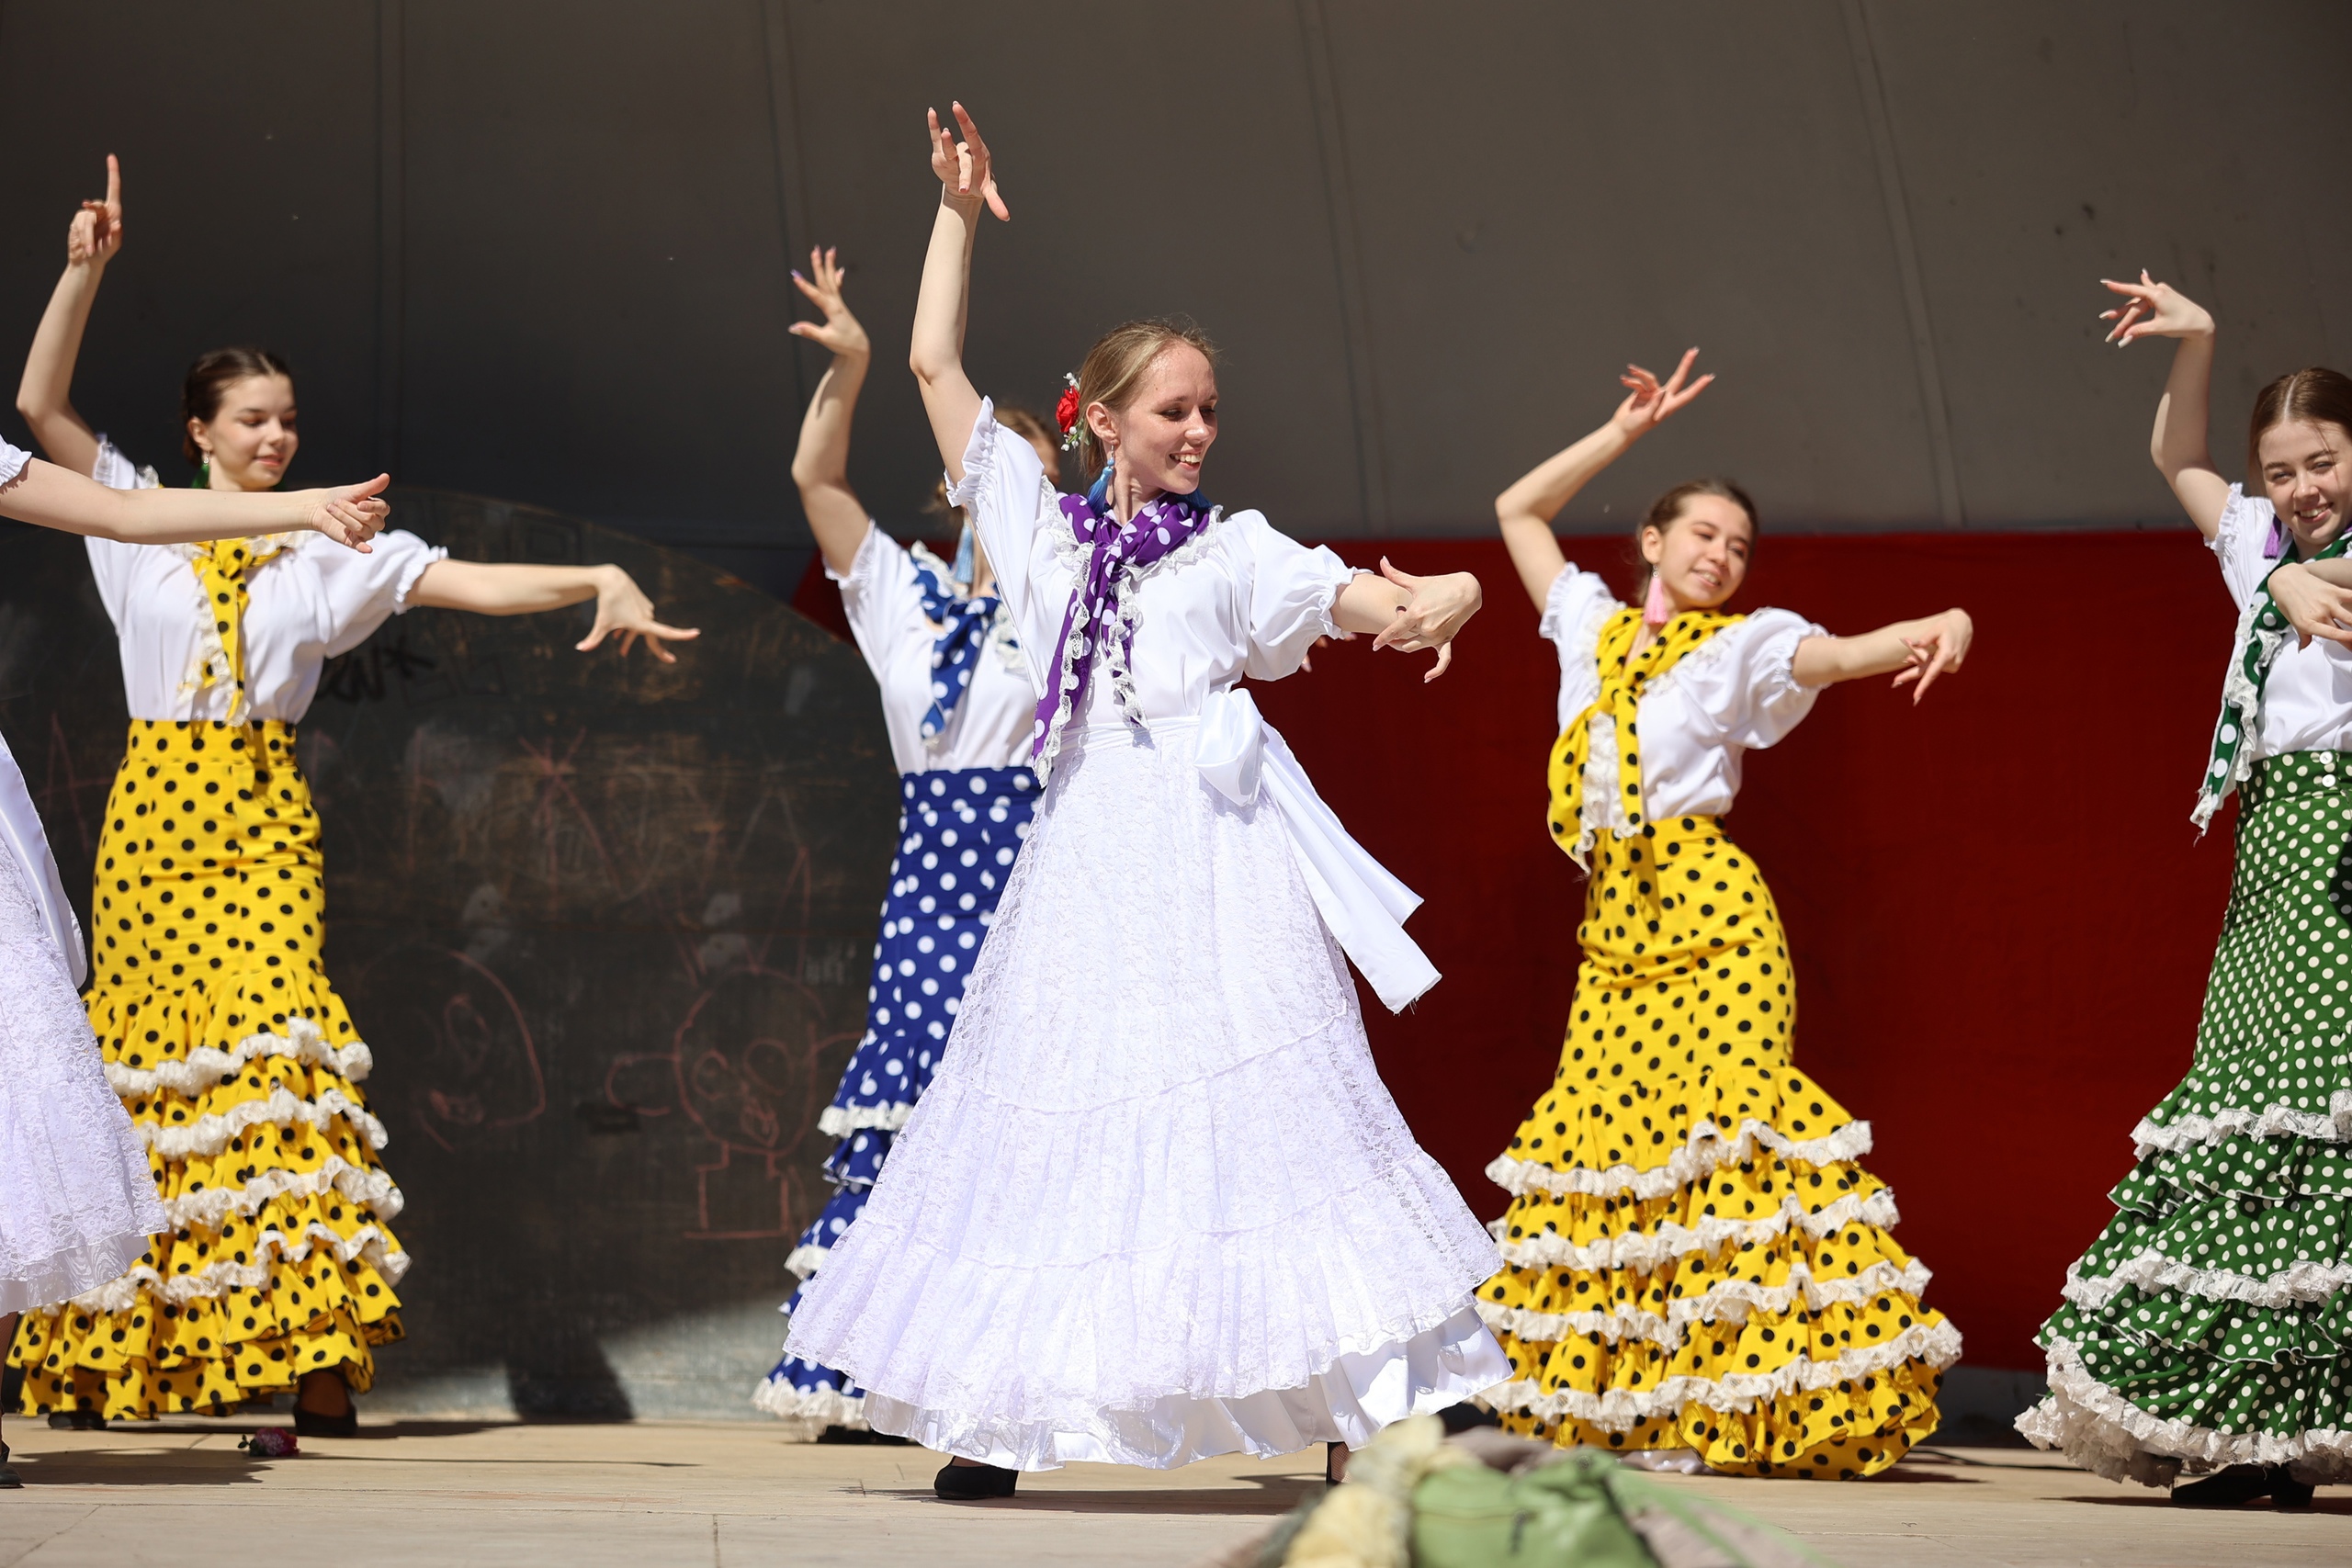 В Твери прошел праздник весны и танца — фестиваль «ФламенкоМай»